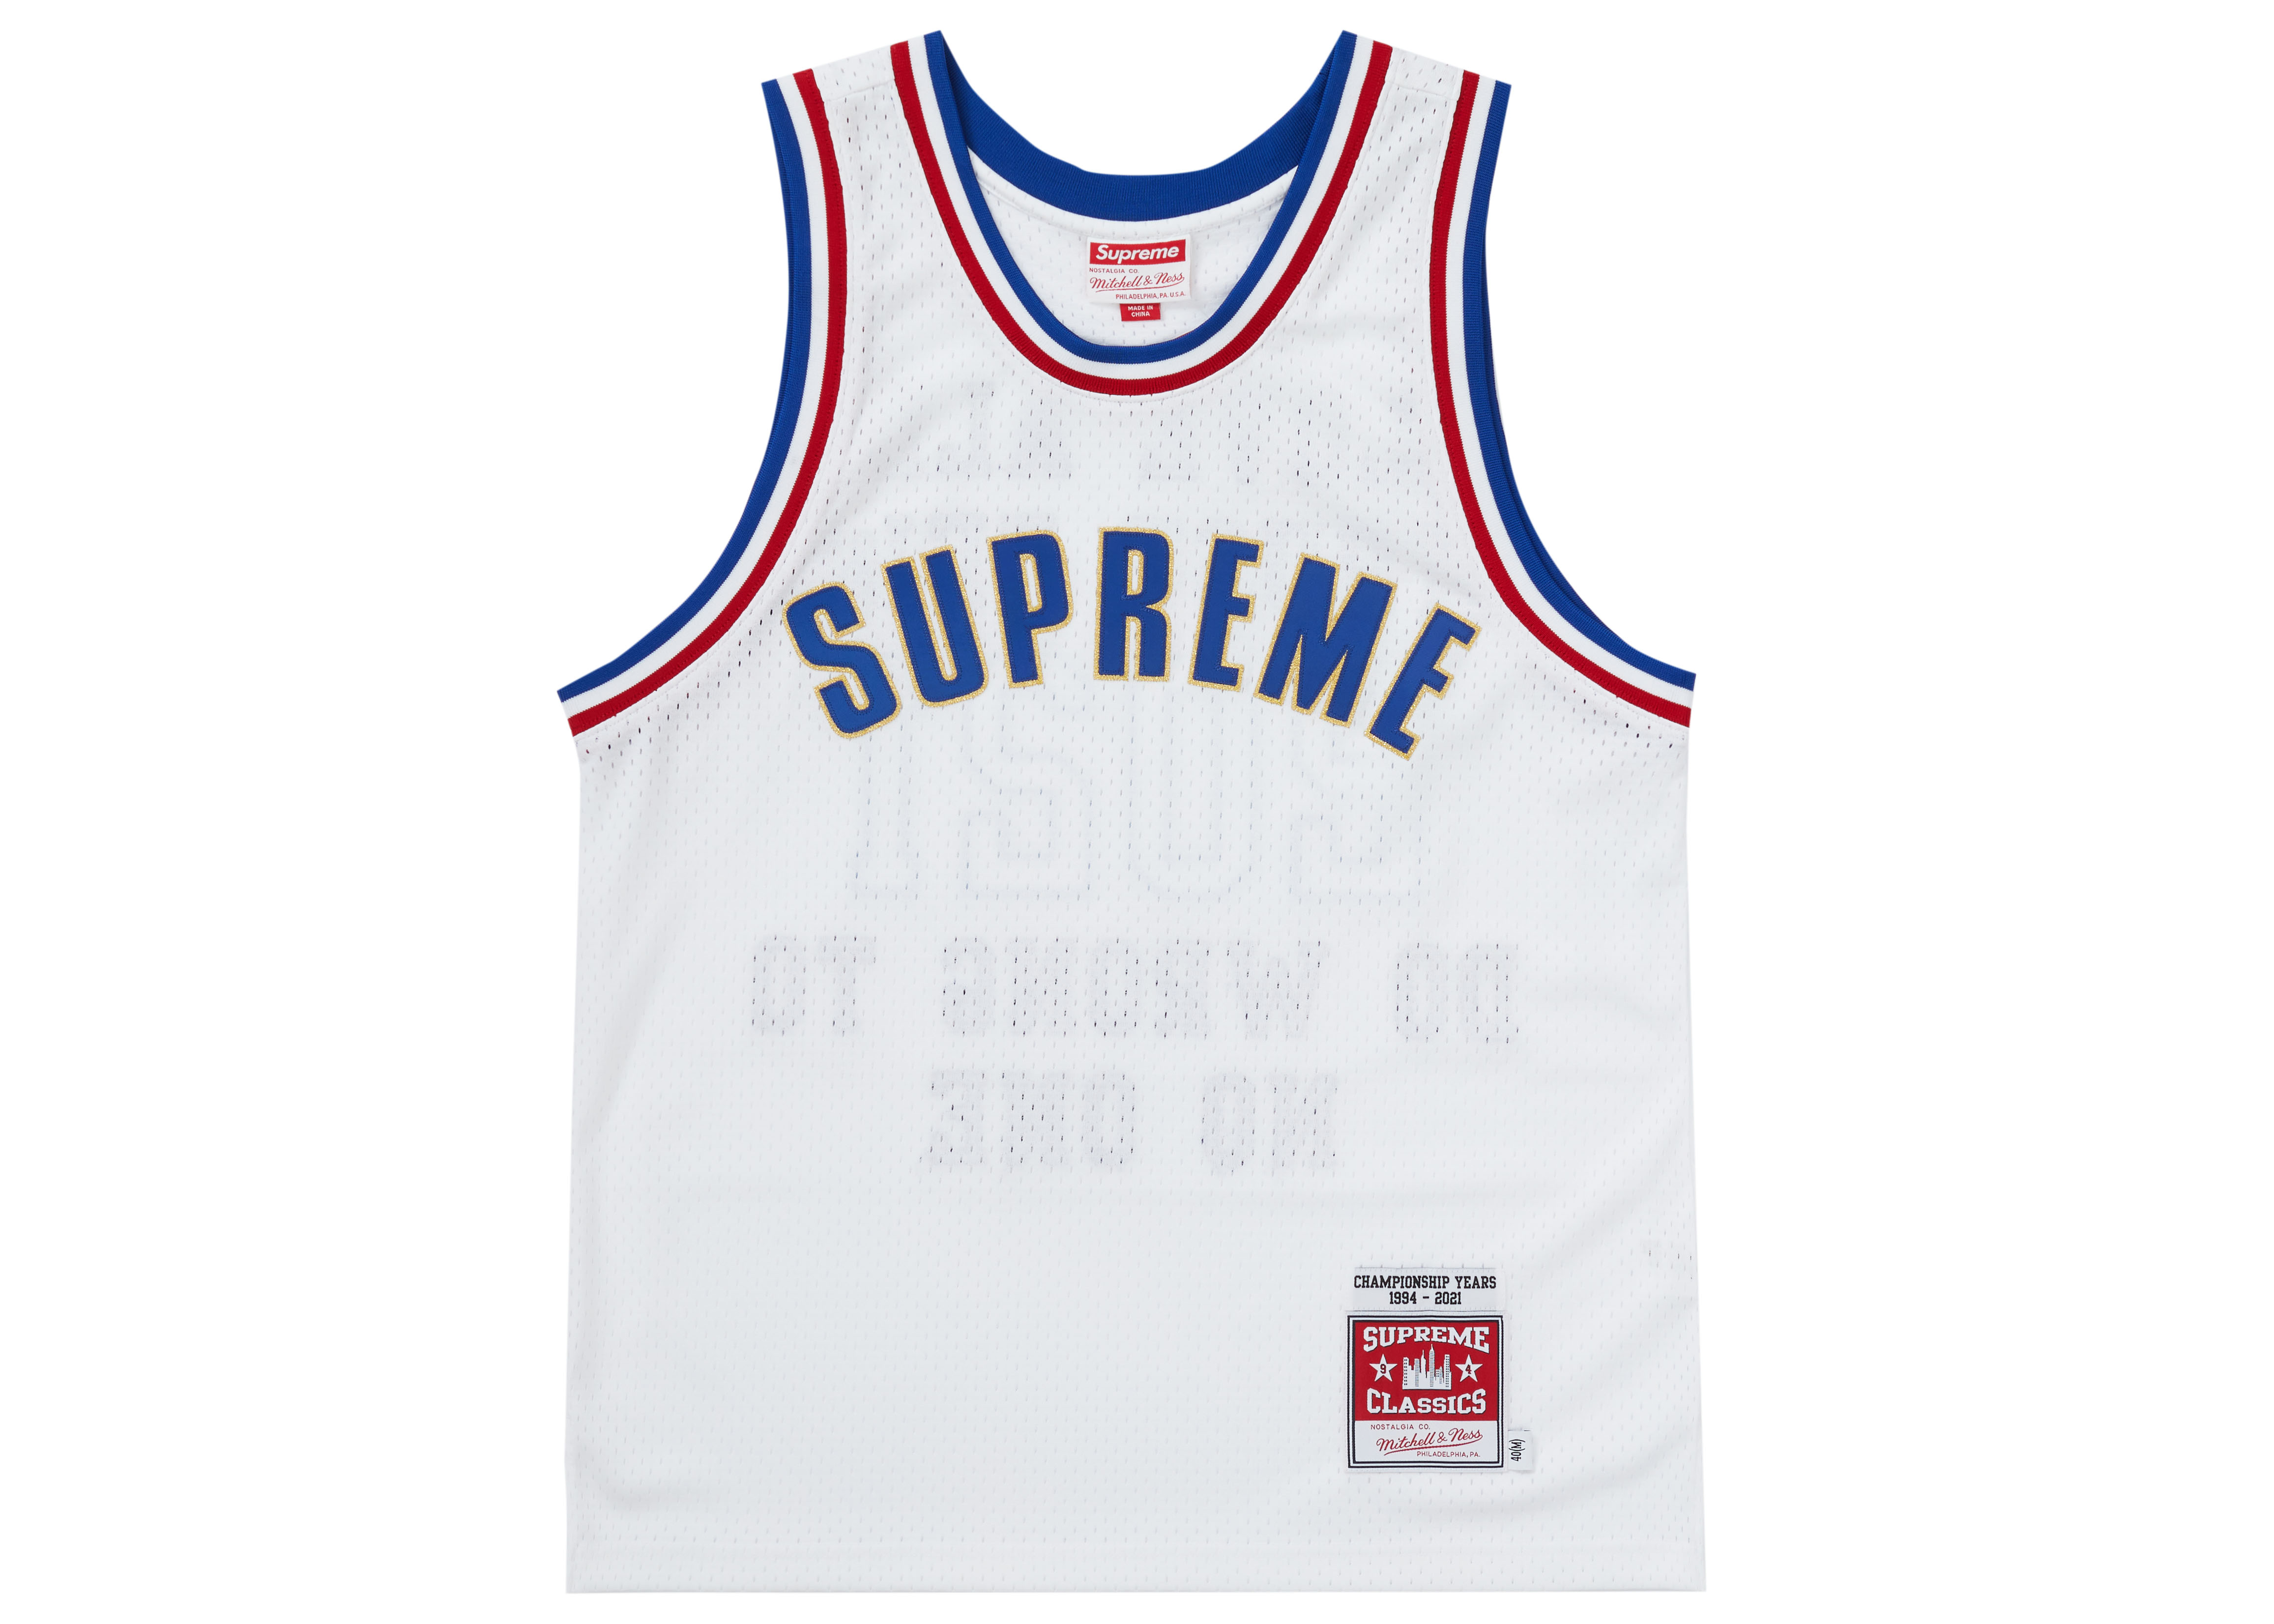 Supreme®/Mitchell & Ness® Basketball